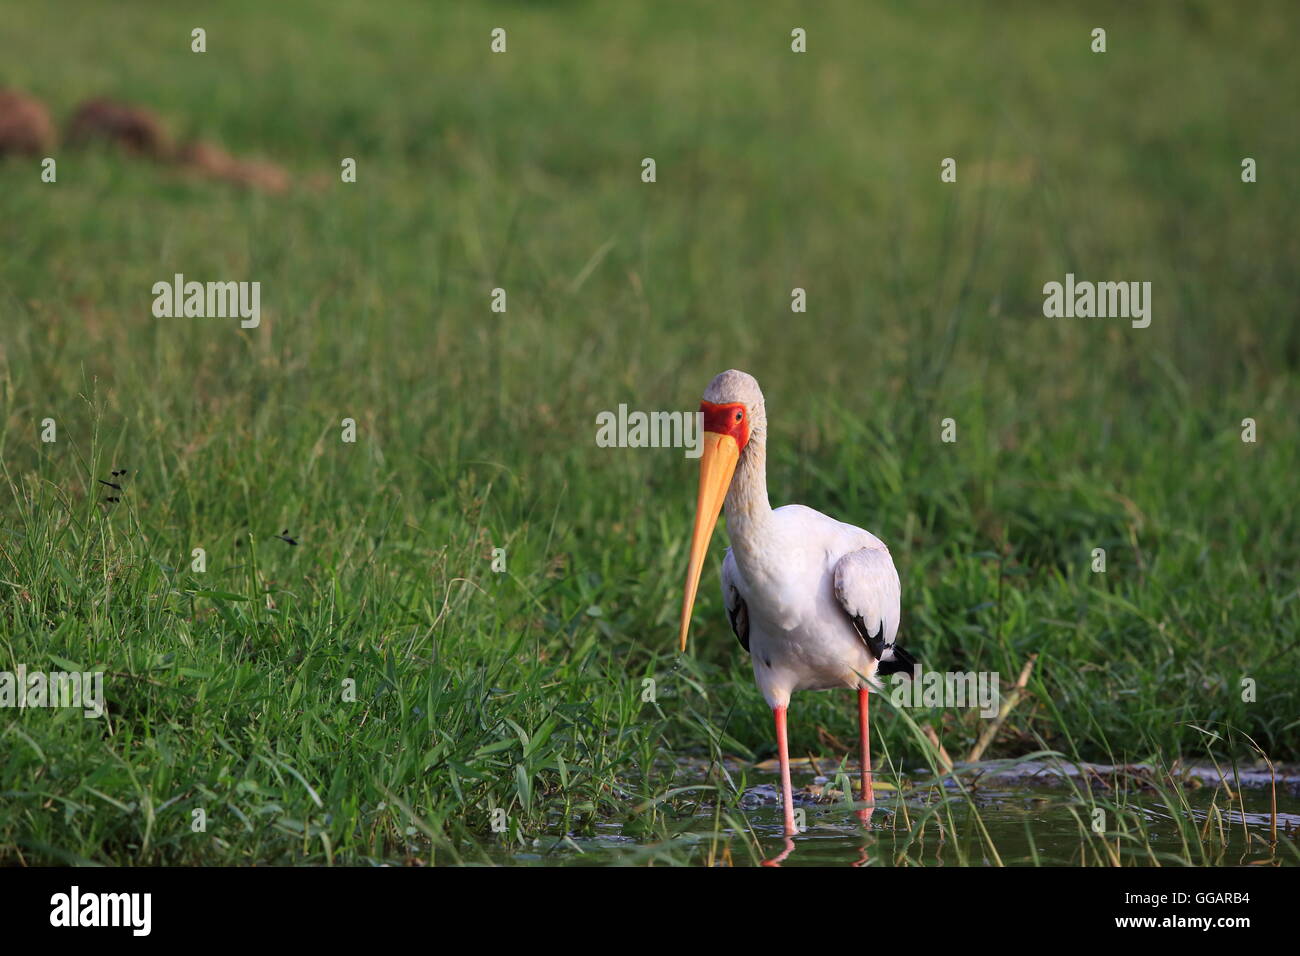 Yellow-billed stork (Mycteria ibis) dans le Parc national Queen Elizabeth, en Ouganda Banque D'Images